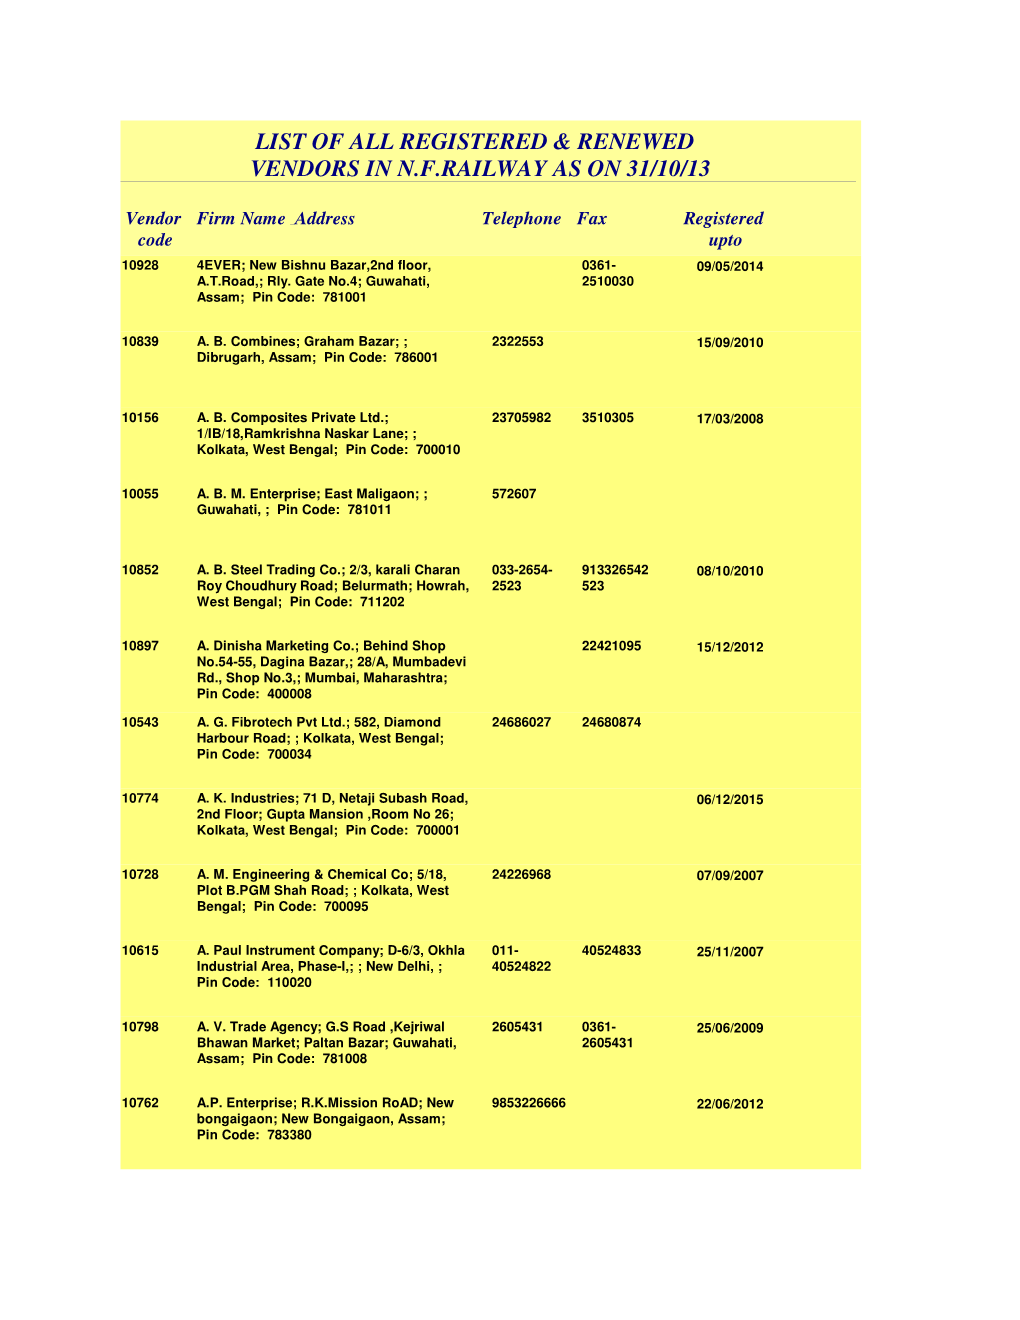 List of All Registered & Renewed Vendors in N.F.Railway As on 31/10/13